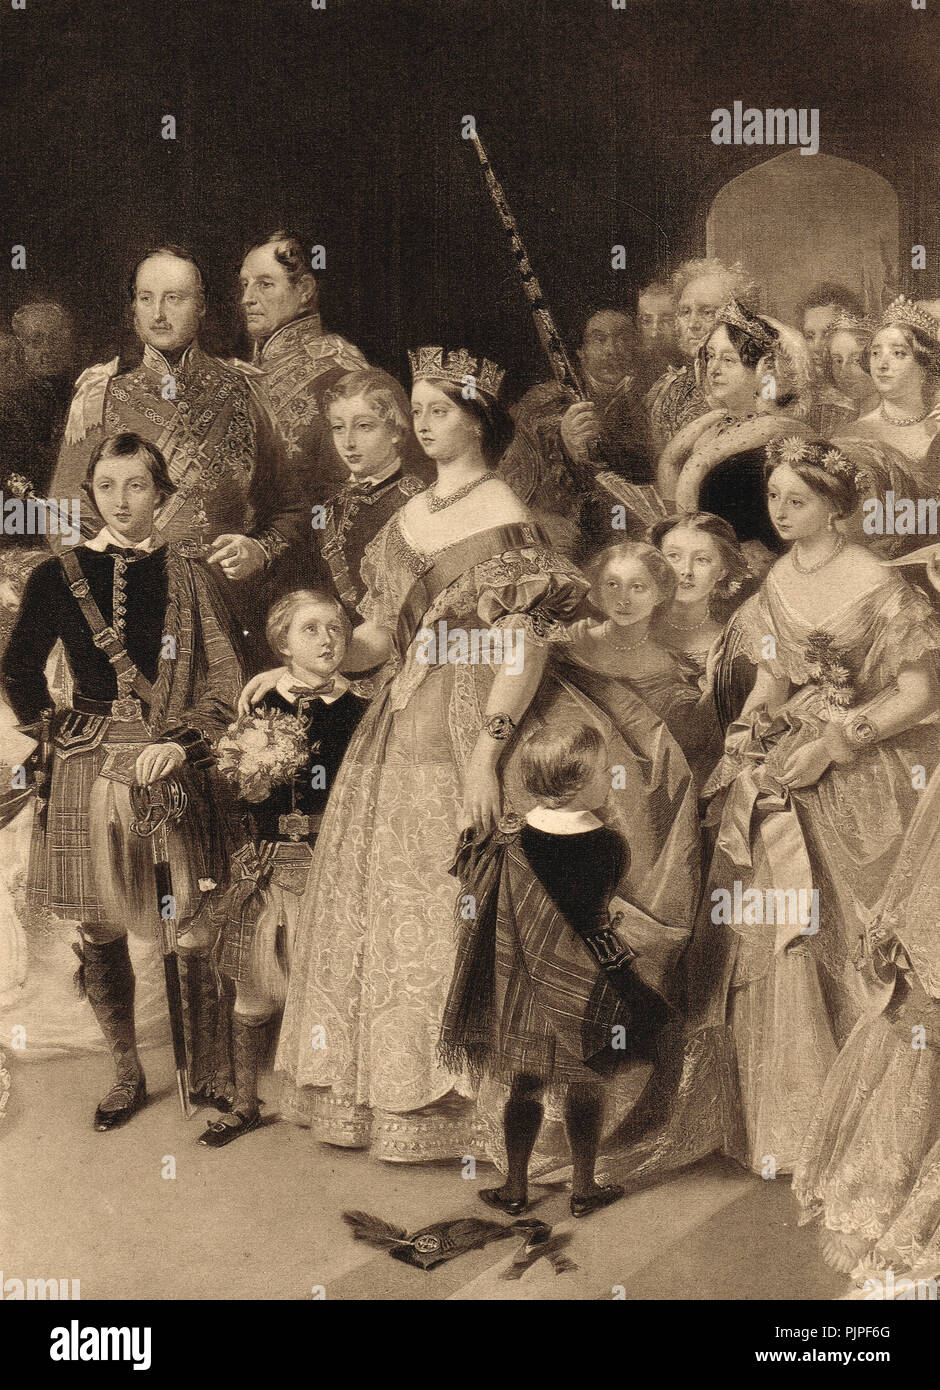 Il matrimonio di Victoria Princess Royal, primogenito della regina Victoria, al principe Federico, il futuro imperatore tedesco Federico III, cappella reale di St James Palace, 25 Gennaio 1858 Foto Stock